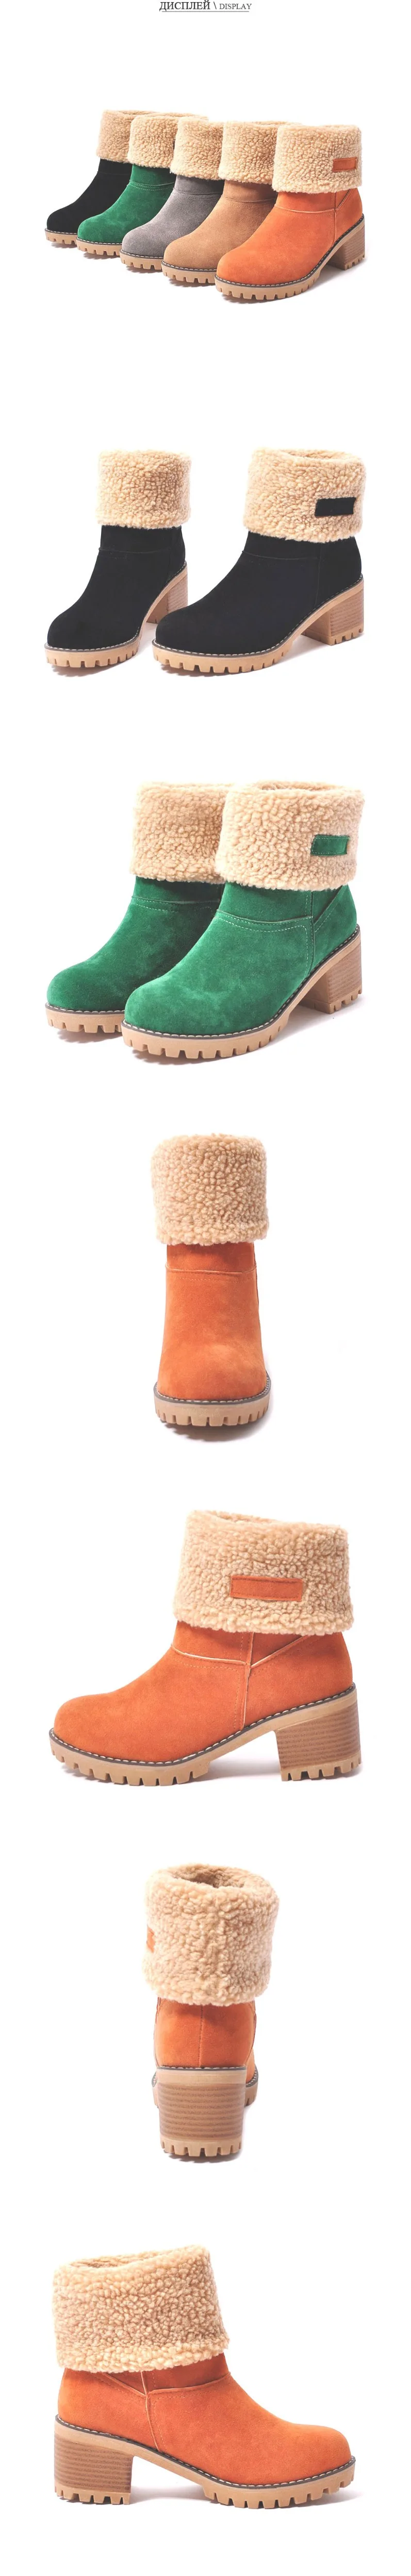 Fanyuan/женские зимние ботинки; водонепроницаемые ботильоны для женщин на толстой платформе; теплые зимние ботинки на меху; размеры 34-43